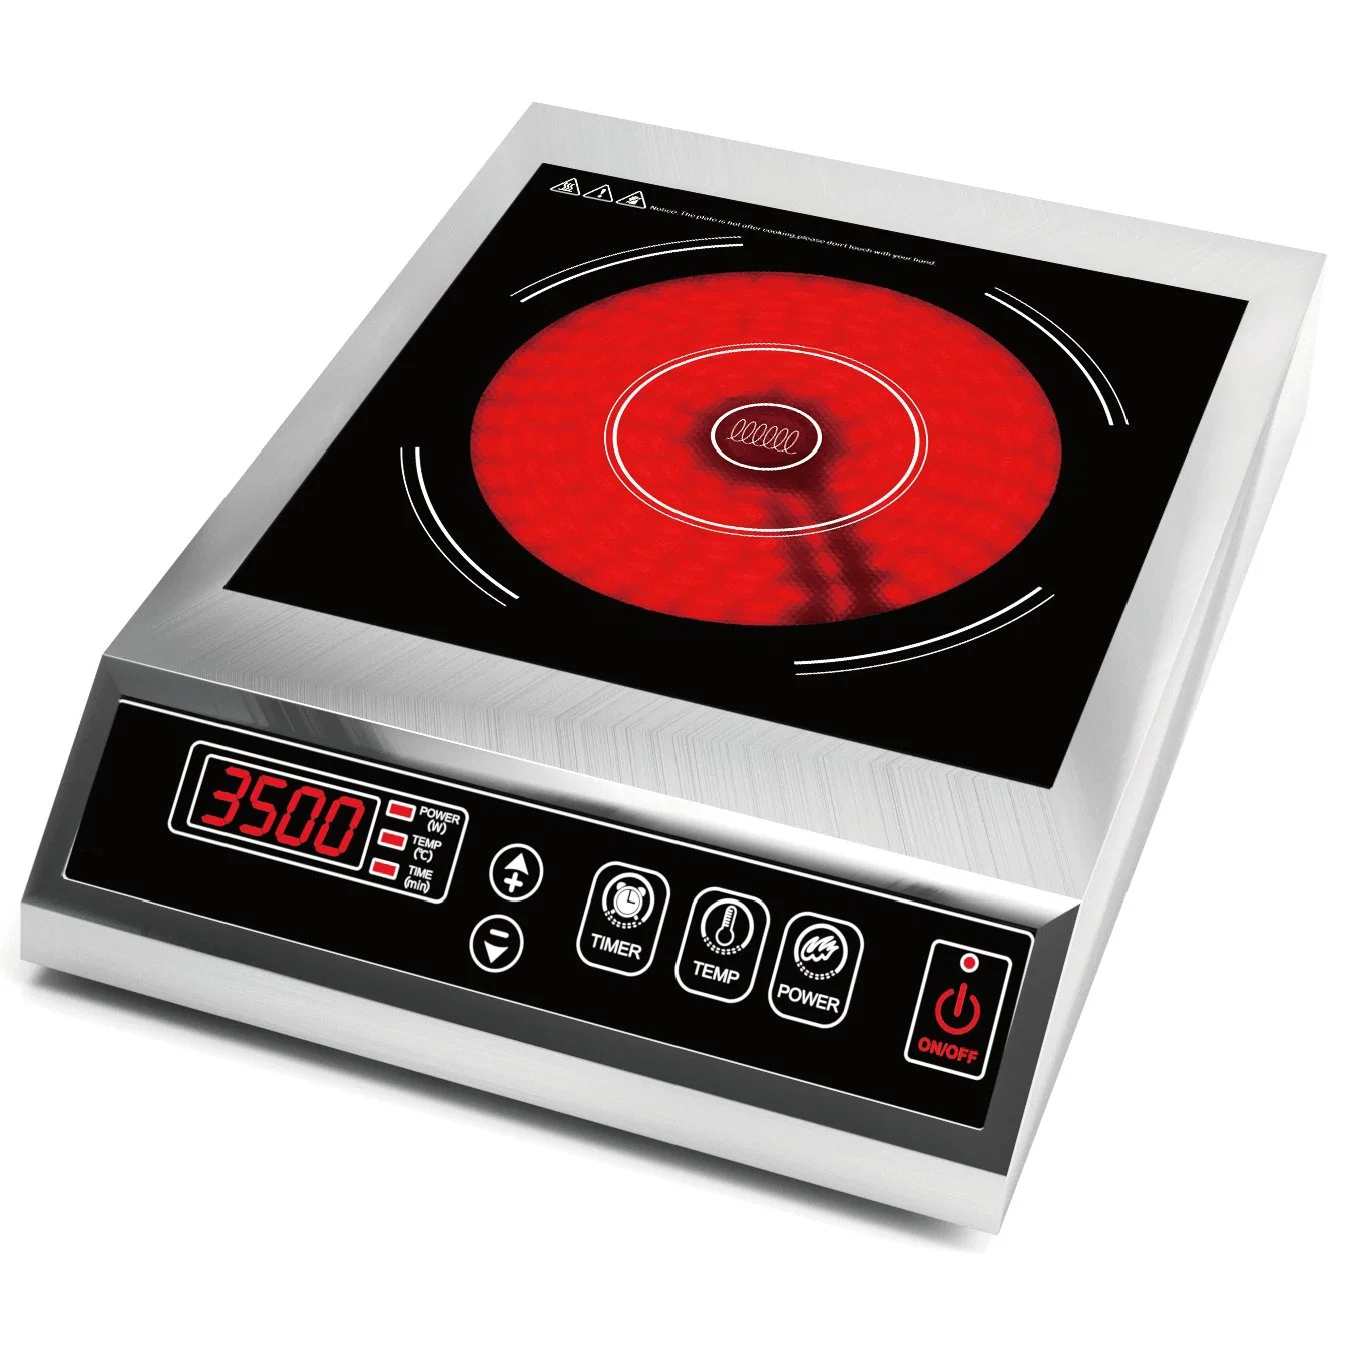 Cuerpo de acero inoxidable 3.5kw infrarrojos comercial Cocina Cocina Cocina de inducción con pantalla táctil plana